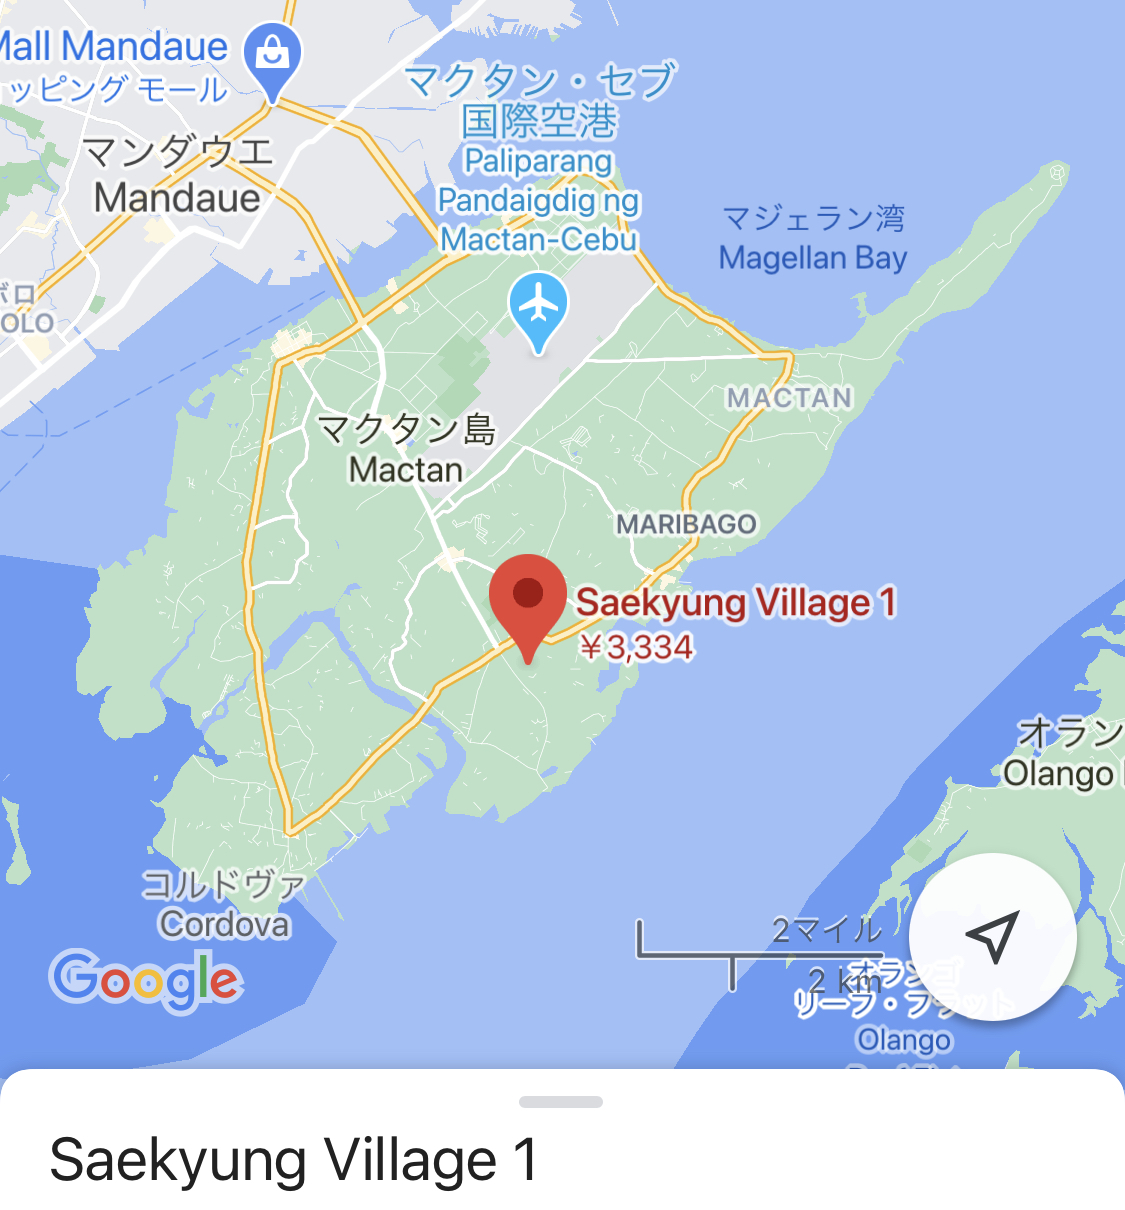 Saekyung Village 1